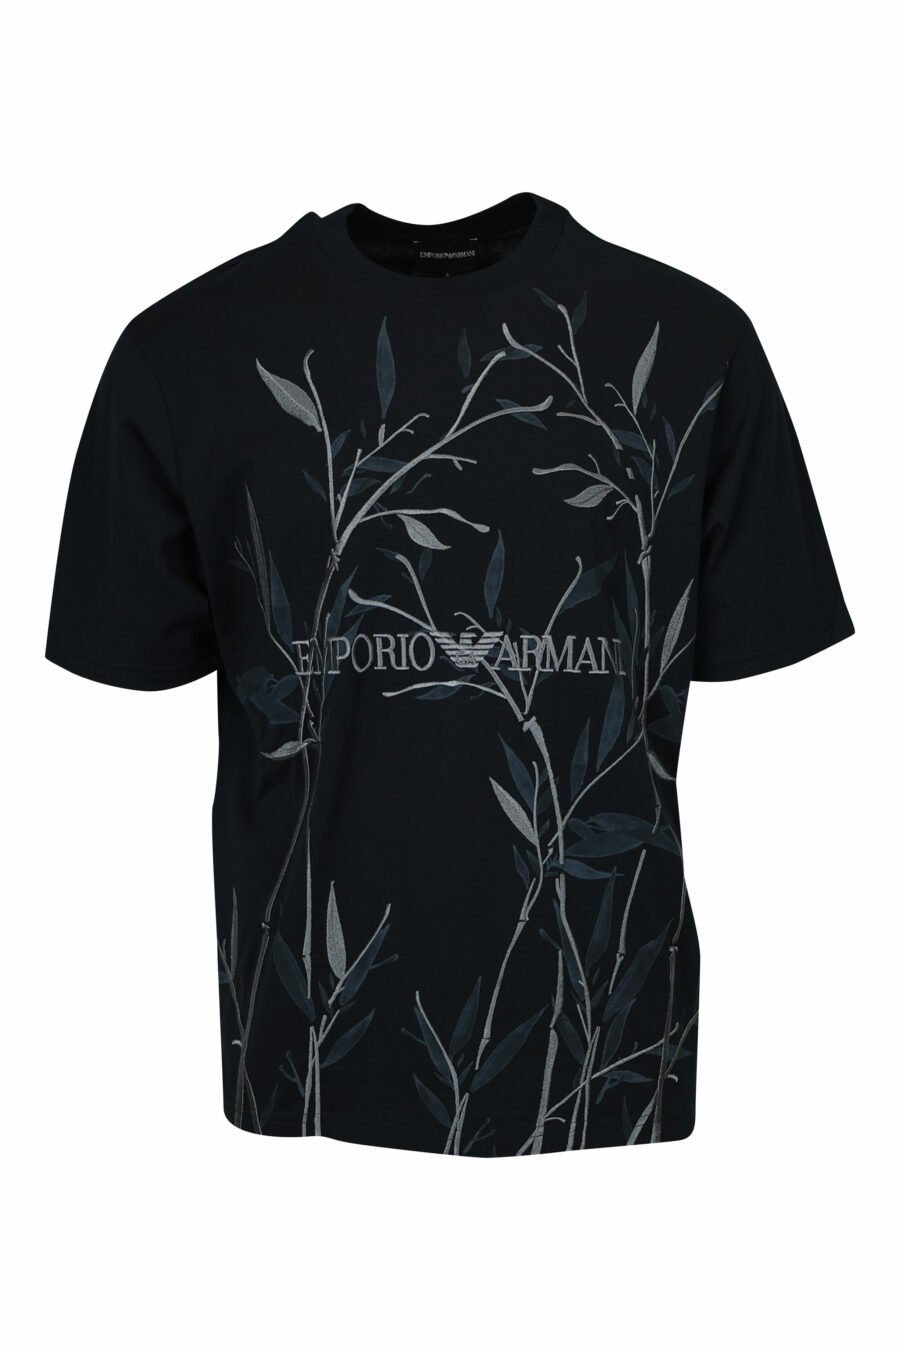 T-shirt noir avec imprimé feuilles et maxilogo "emporio" - 8058947296163